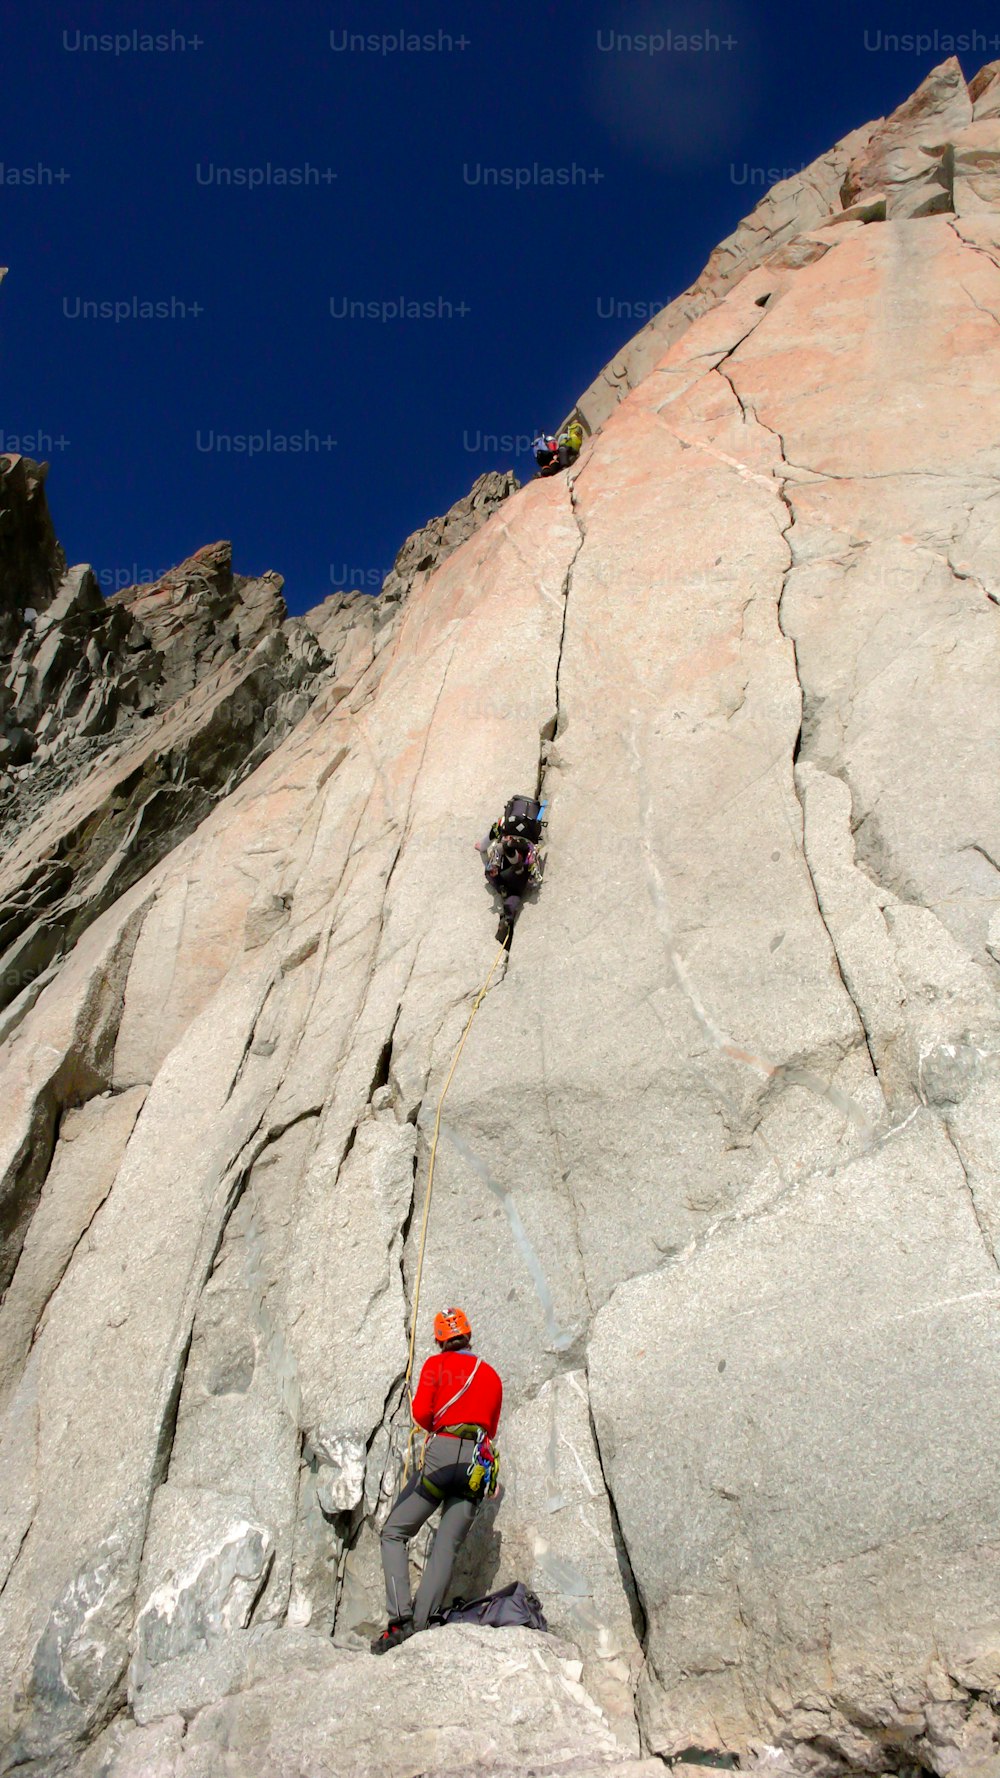 dos escaladores en una ruta difícil en una pared vertical de granito en los Alpes franceses cerca de Chamonix bajo un cielo azul